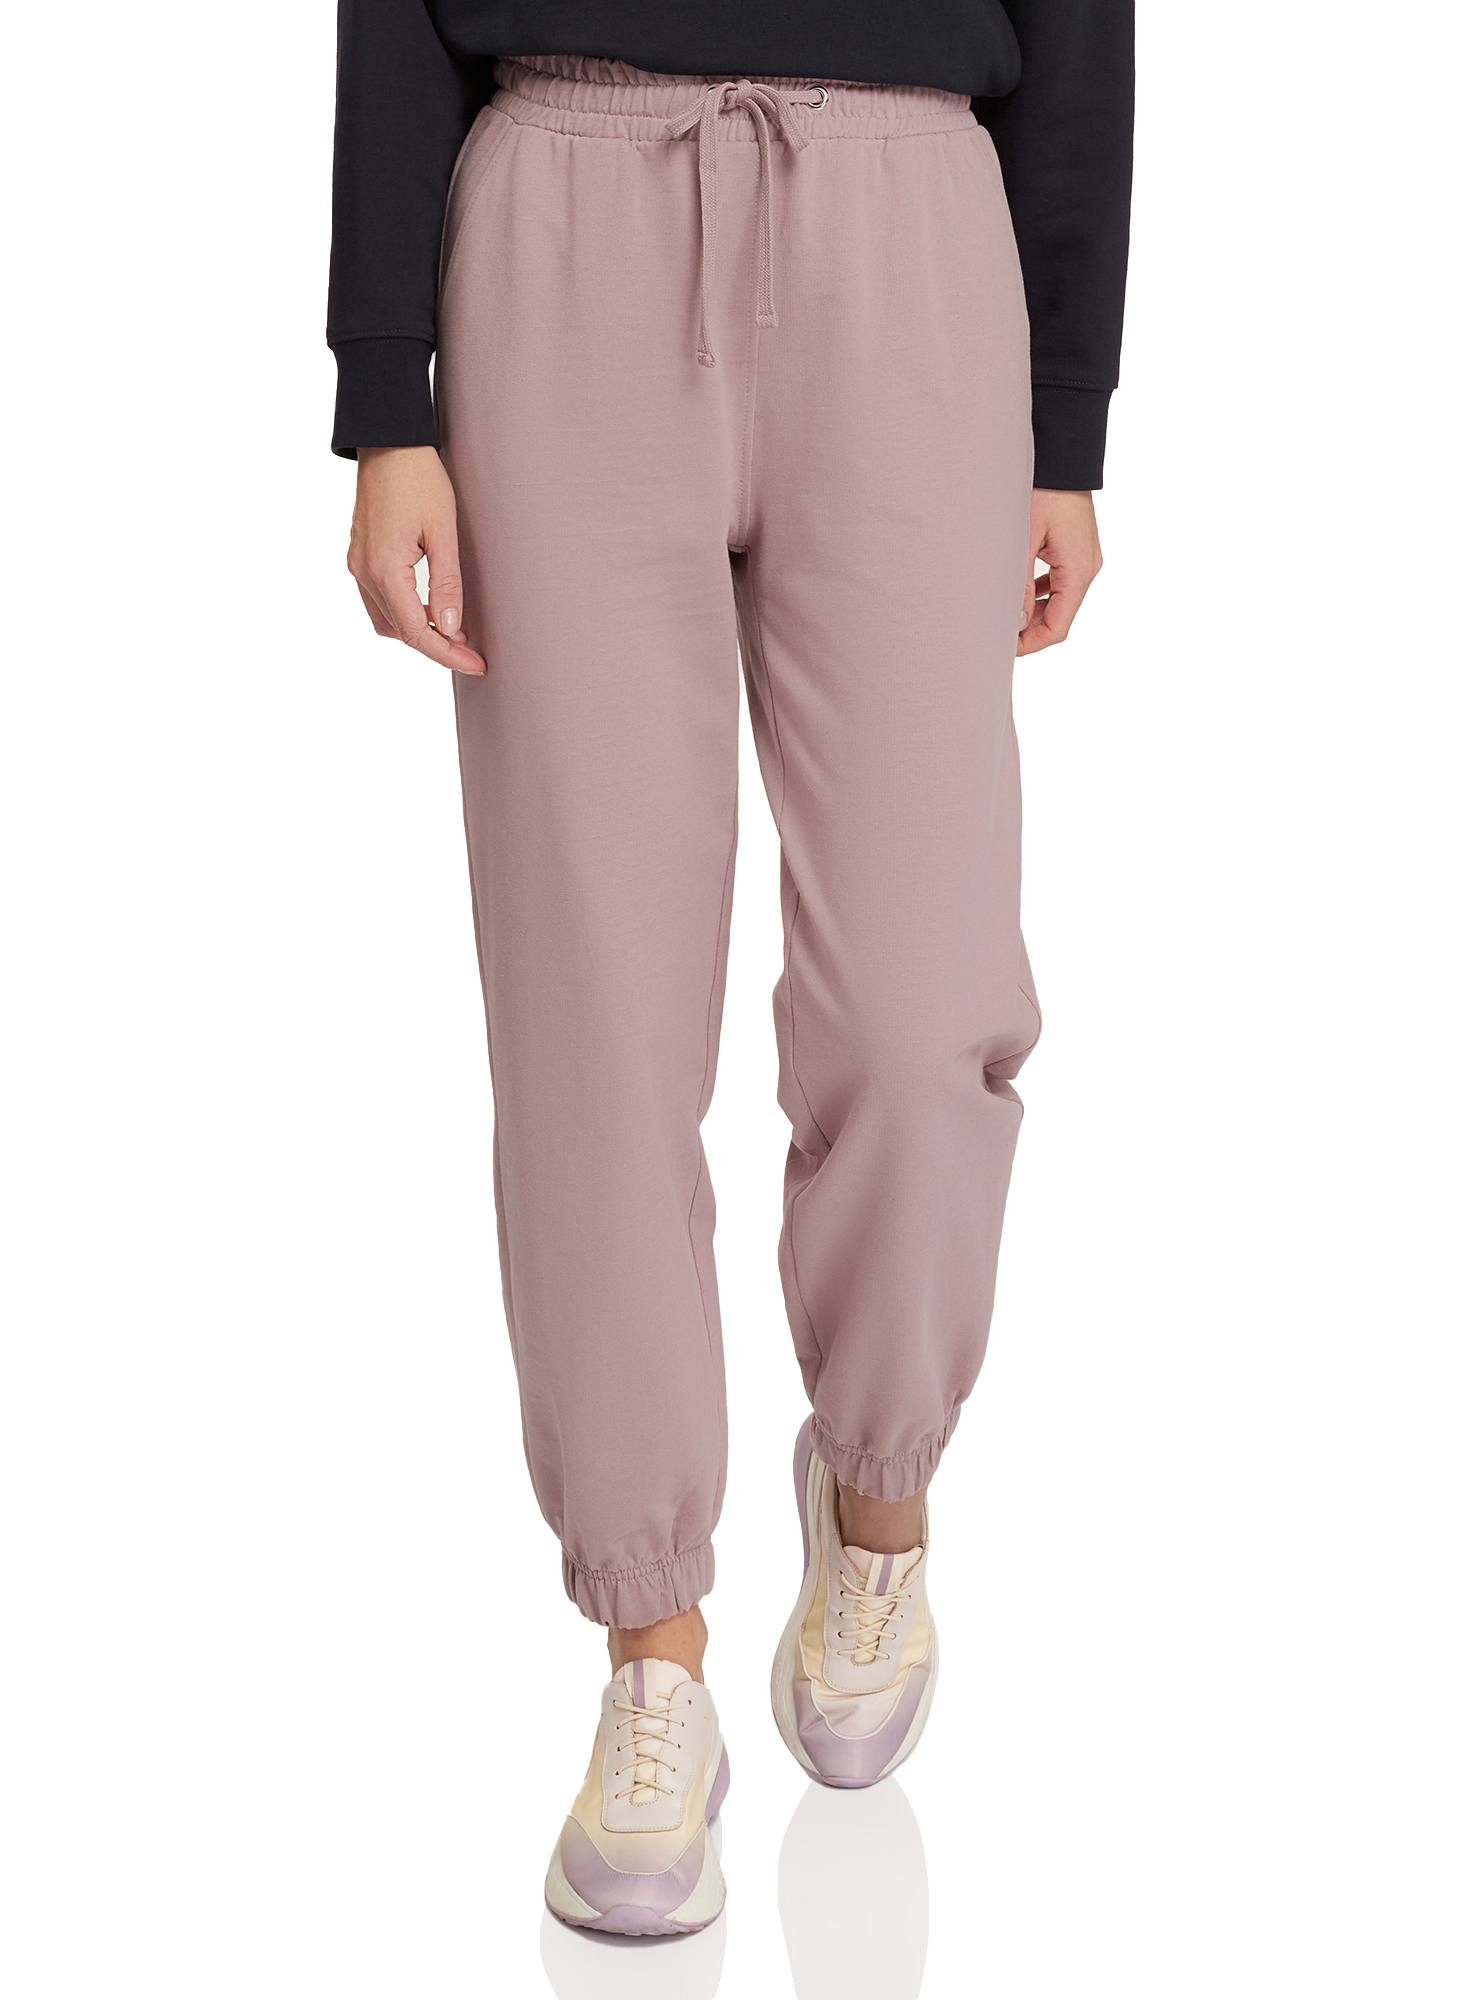 Спортивные брюки женские oodji 16701086-3 розовые S